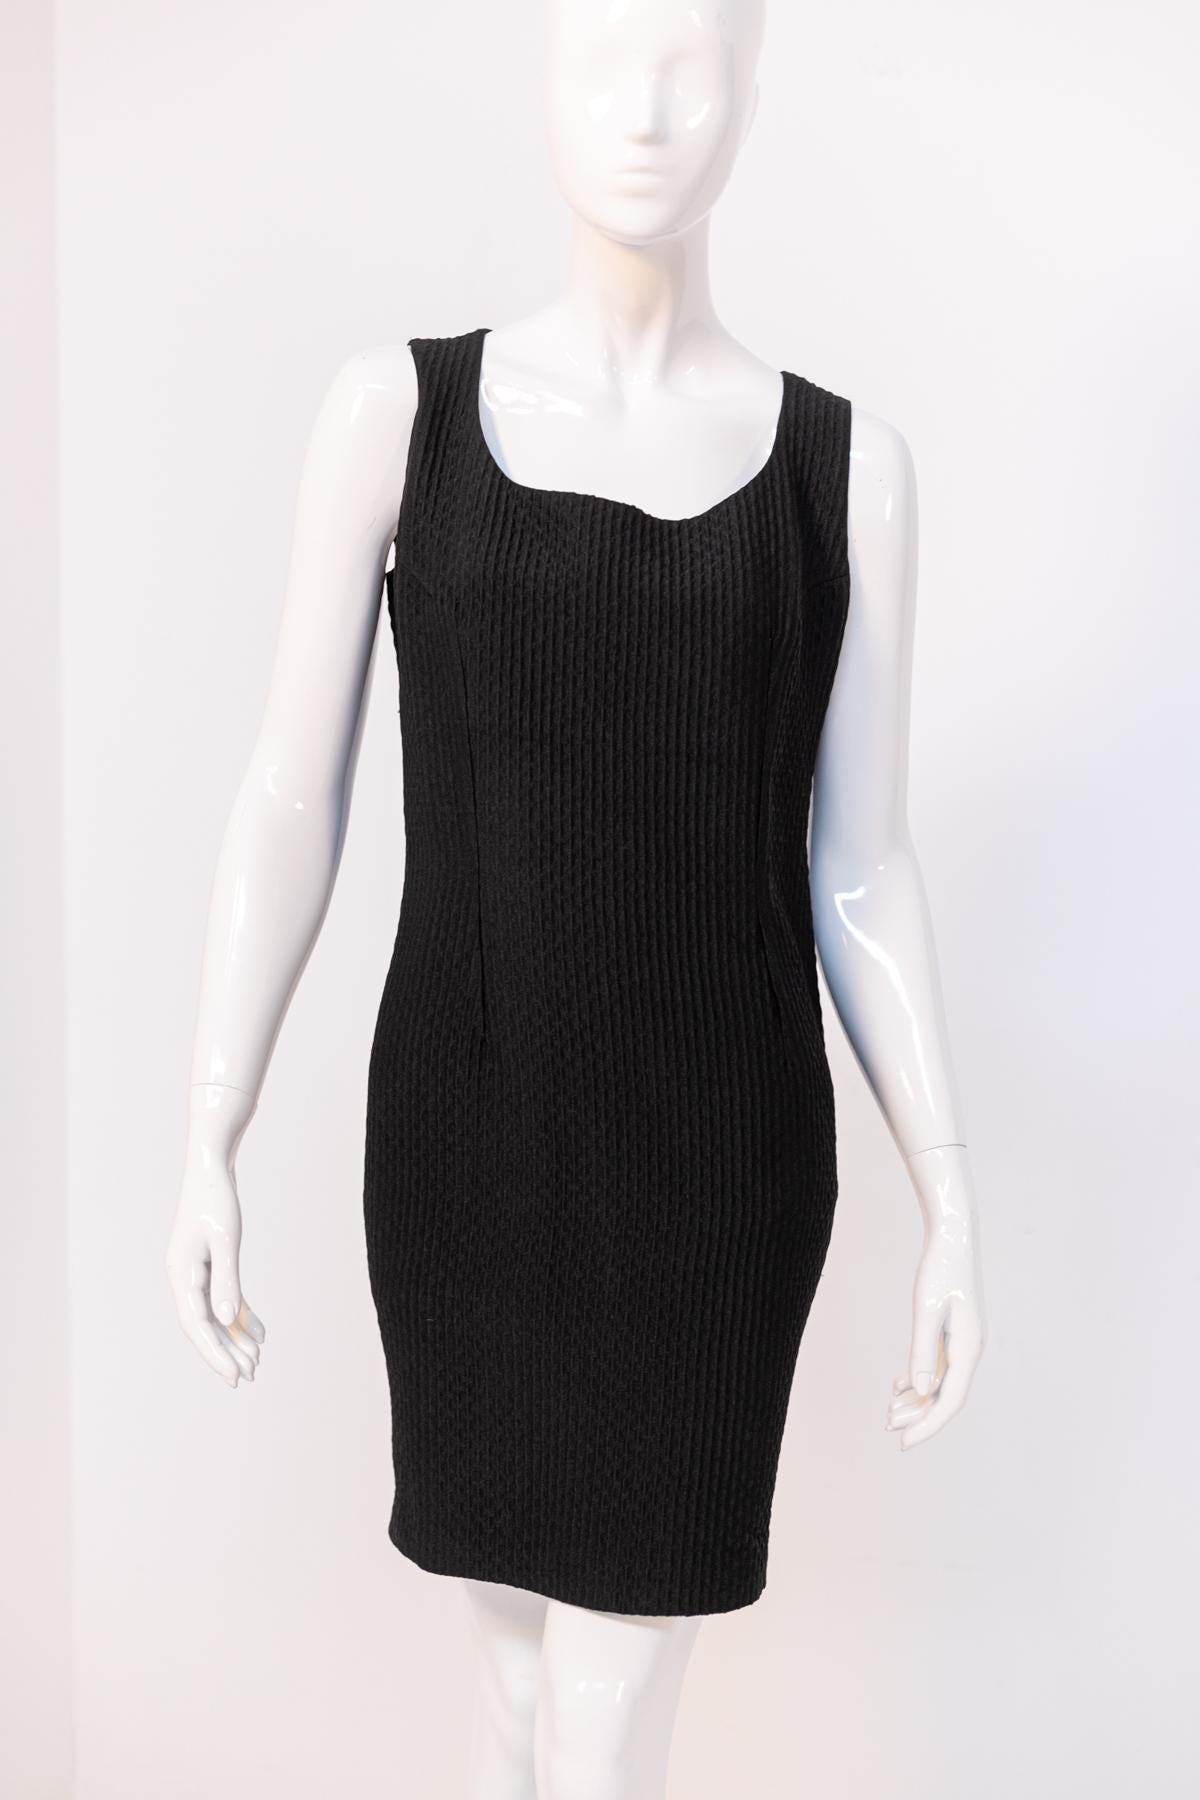 Emilia Andrich Vintage Black Dress with Slit For Sale 5